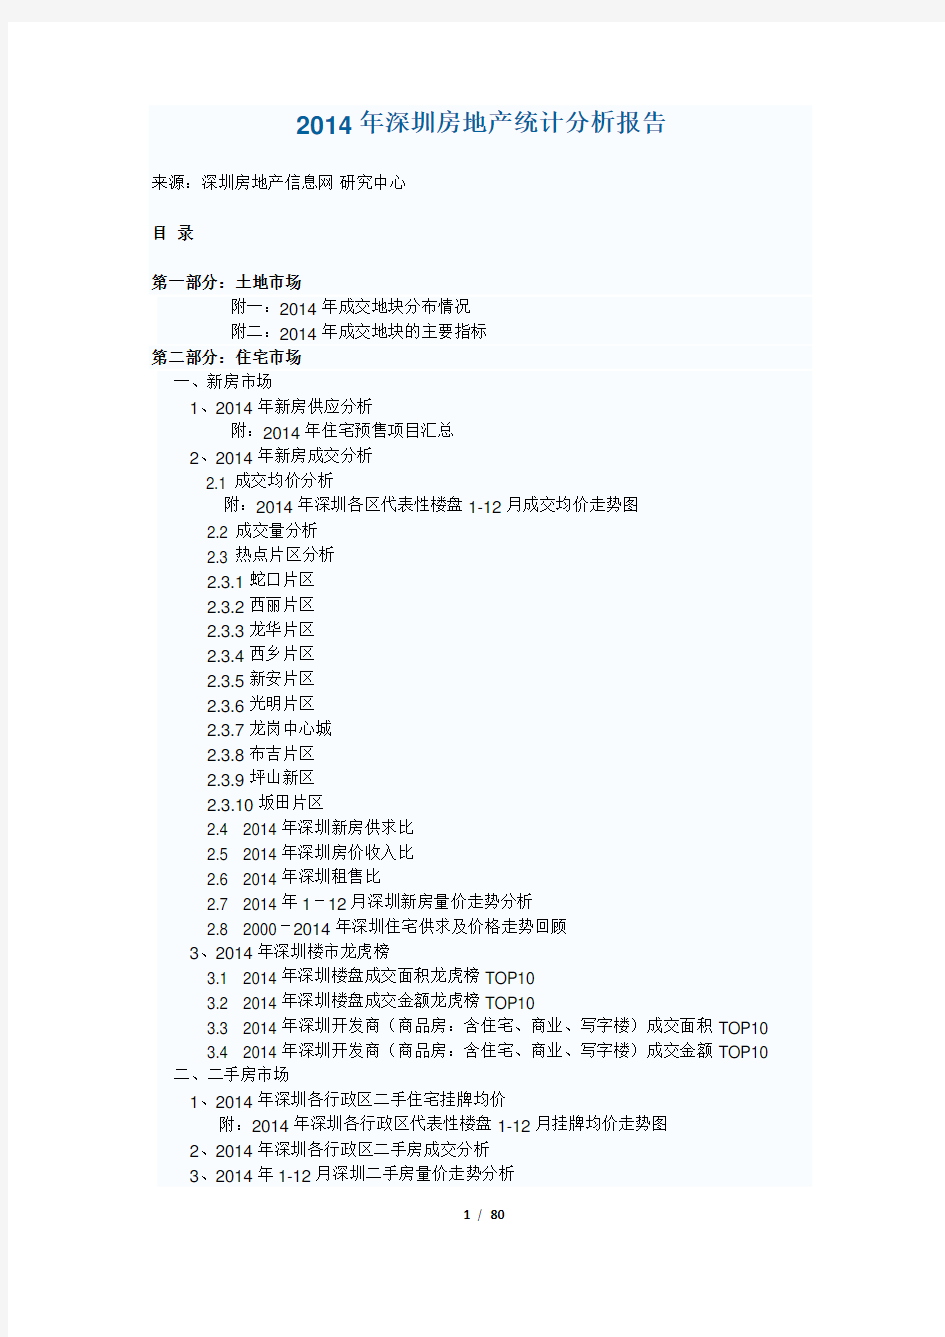 2014年深圳房地产统计分析报告